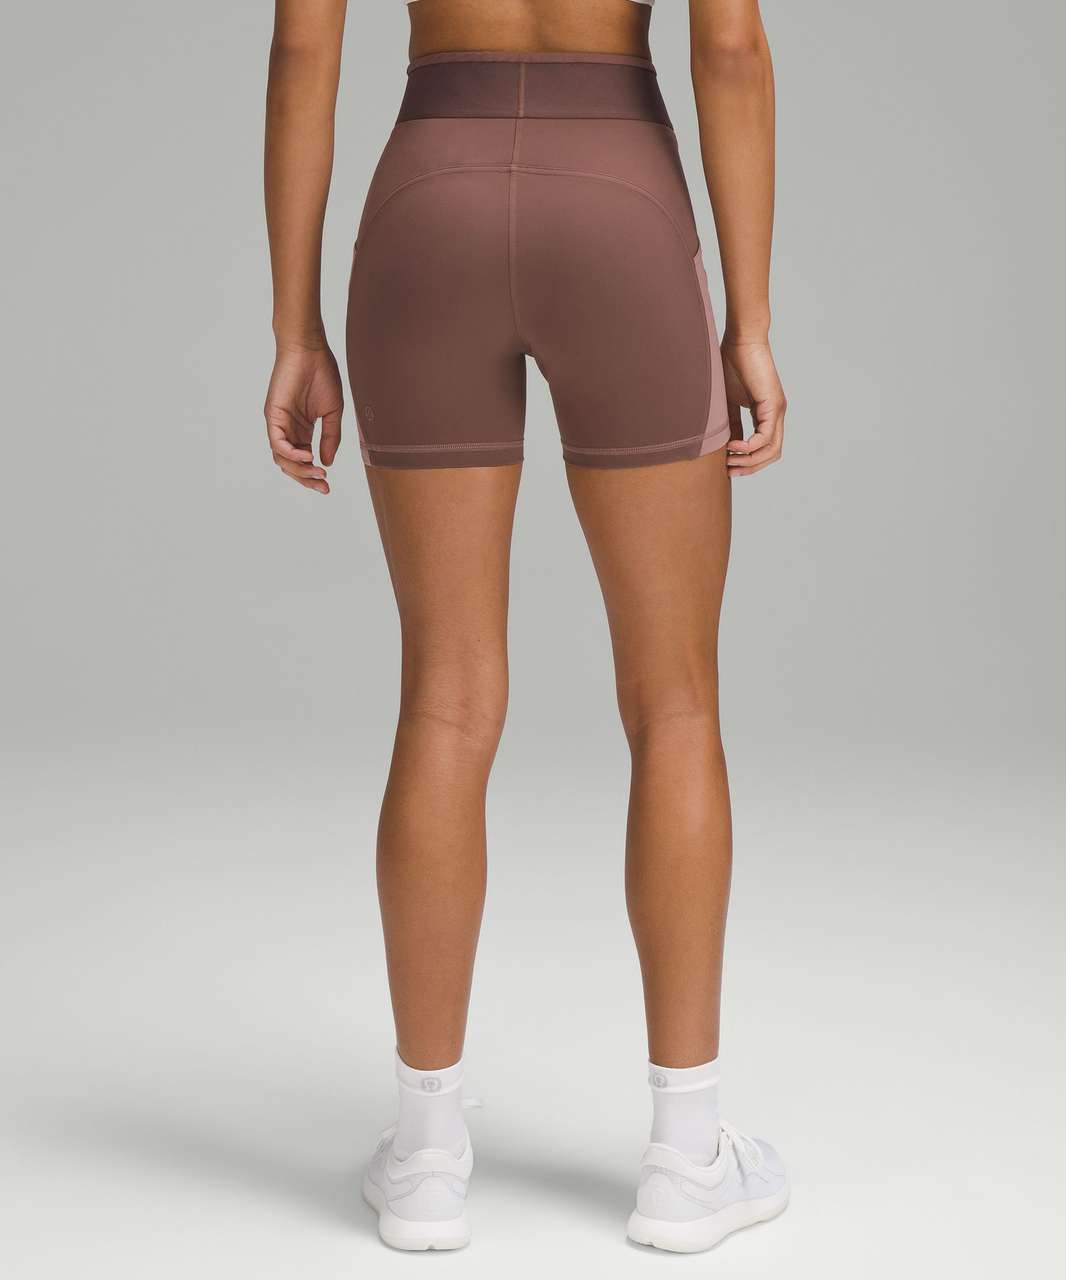 my lulu shorts hack! ;) works wonders 🤌🏽 #lululemon #lululemonshorts, lululemon outfits